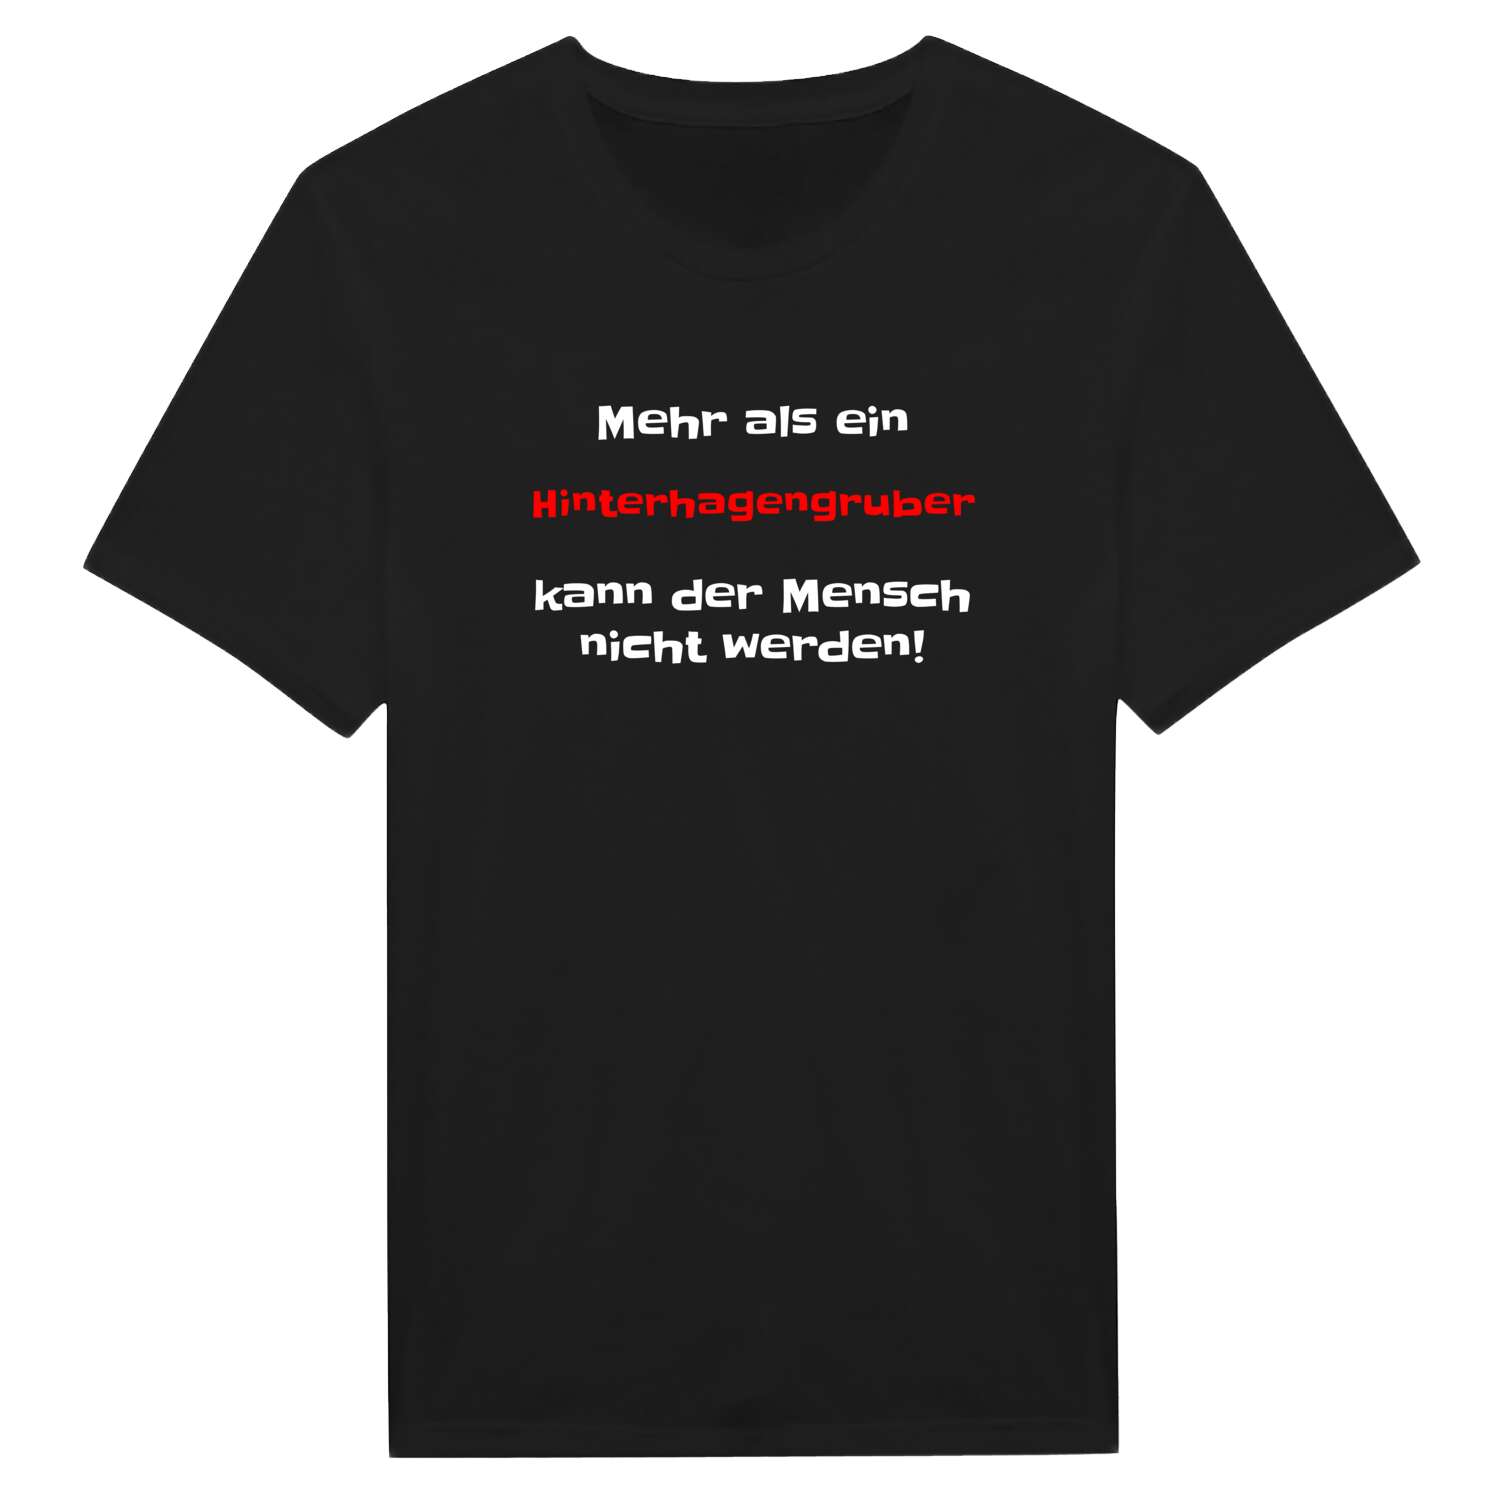 Hinterhagengrub T-Shirt »Mehr als ein«